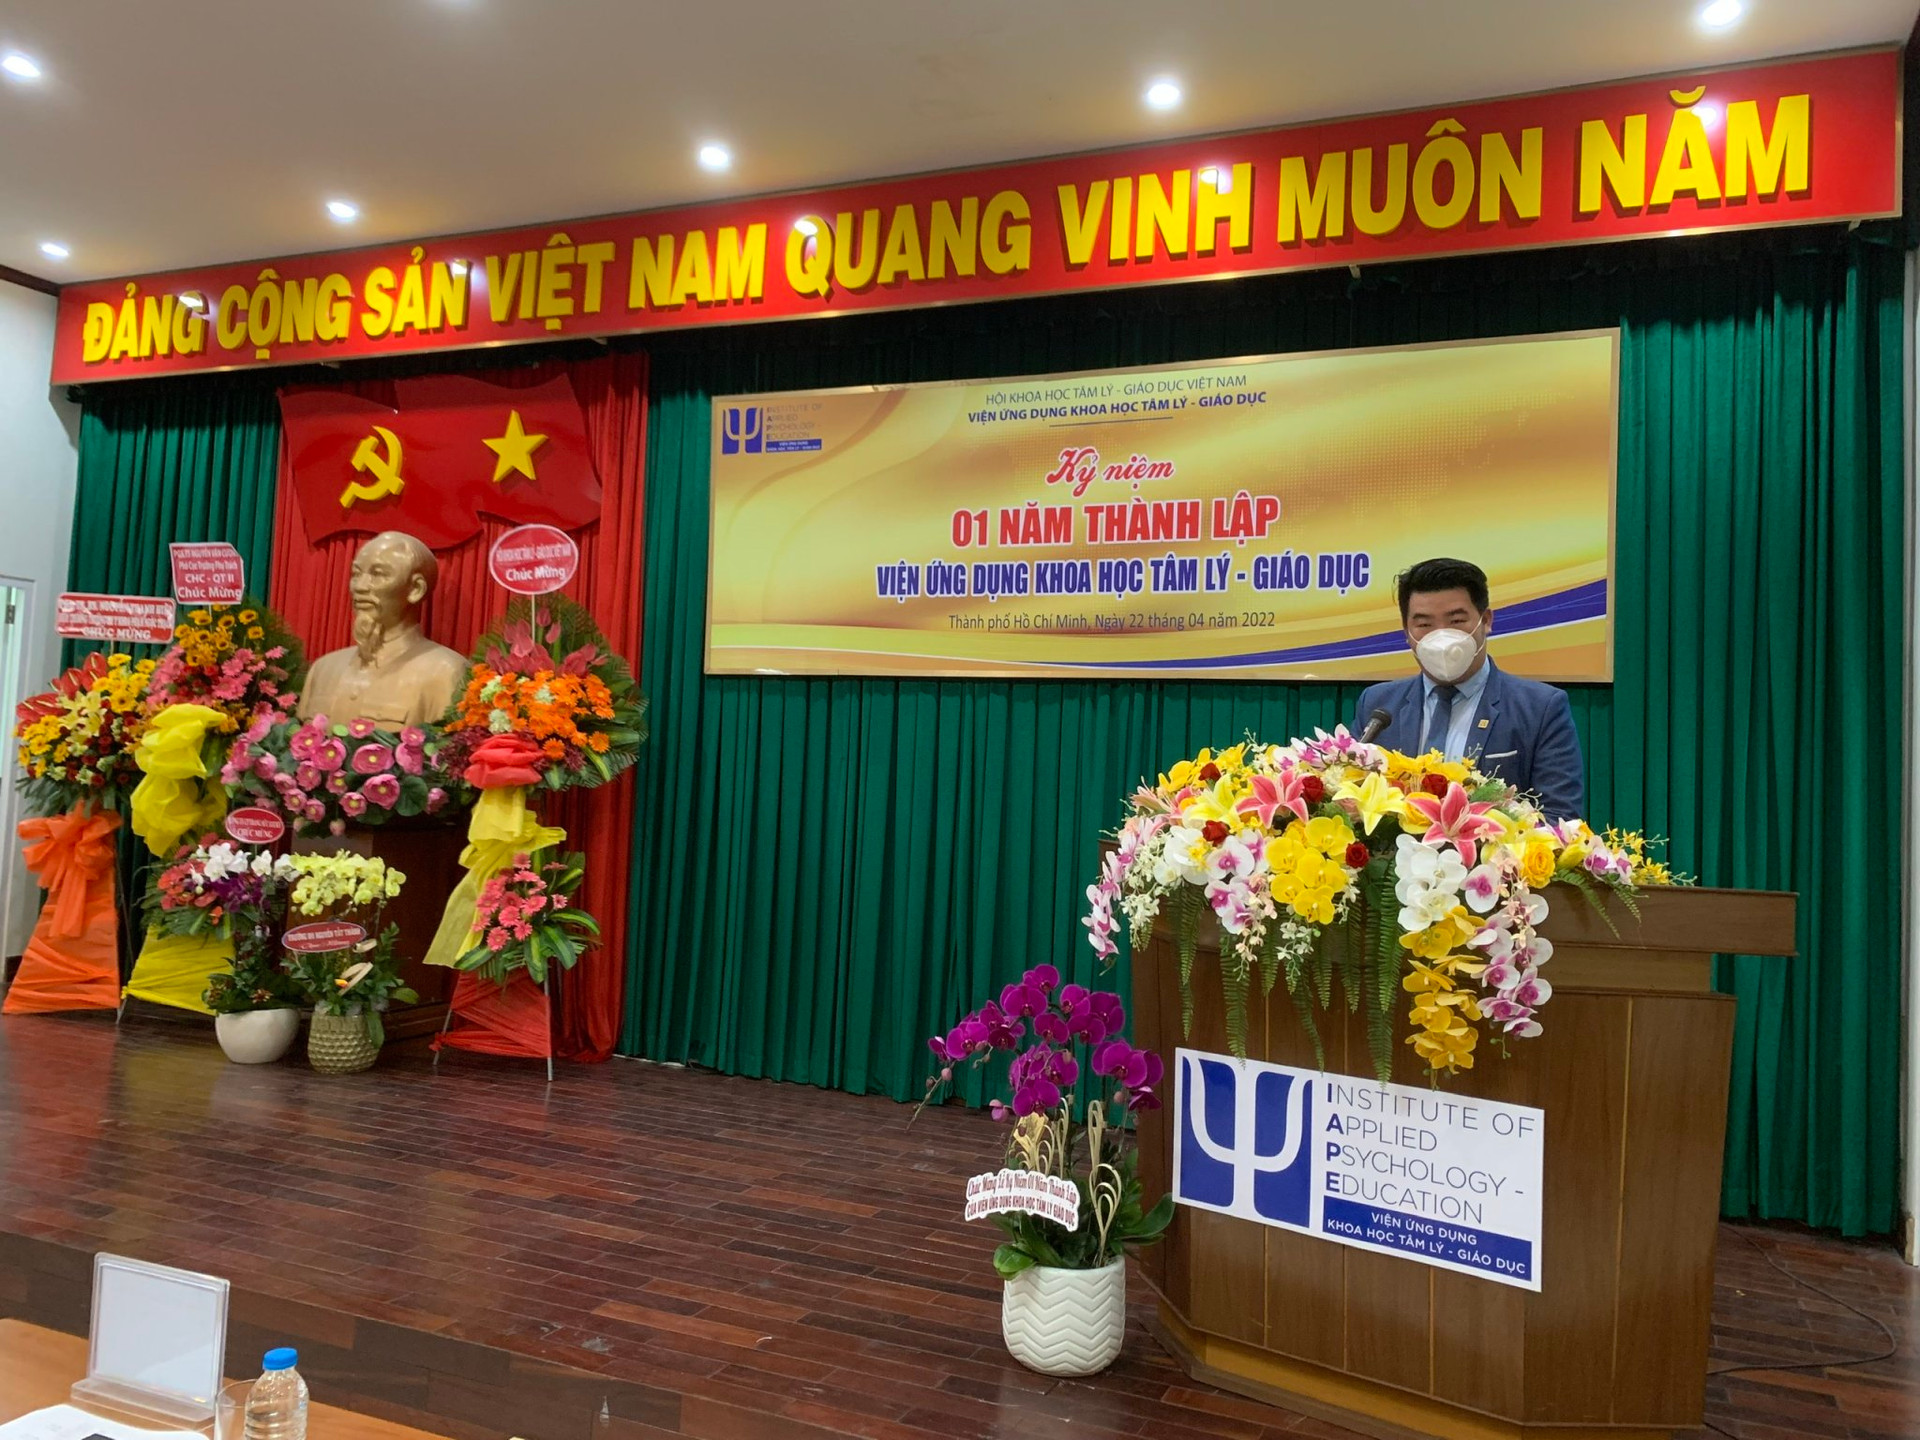 Ông Phạm Văn Giào, Viện trưởng Viện Ứng dụng Khoa học tâm lý - Giáo dục  phát biểu tại buổi lễ